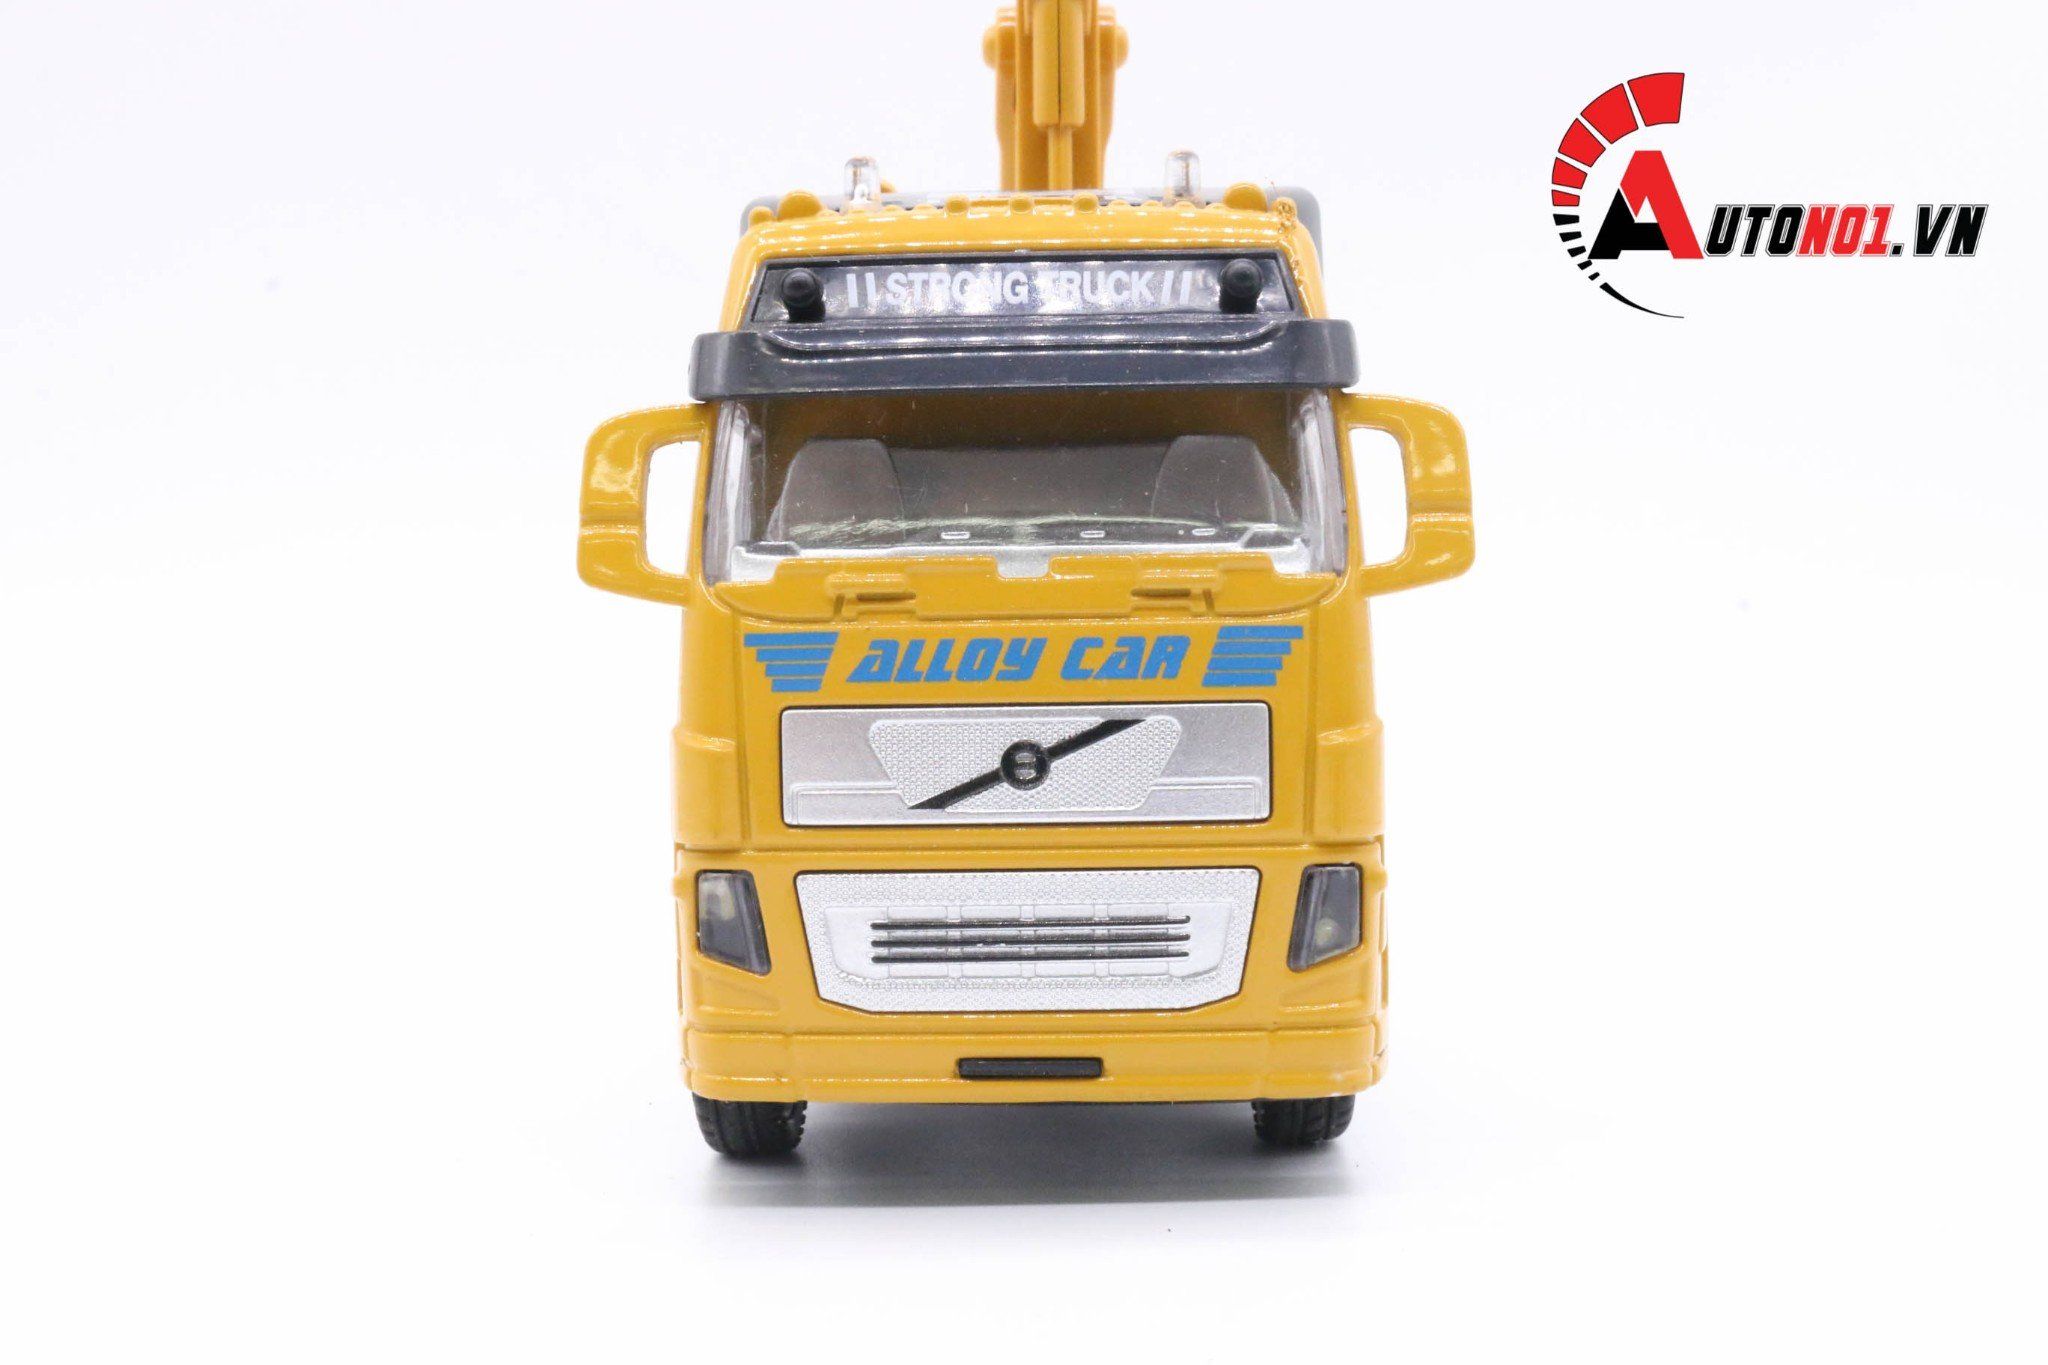  Mô hình xe tải cẩu yellow 1:32 alloy 